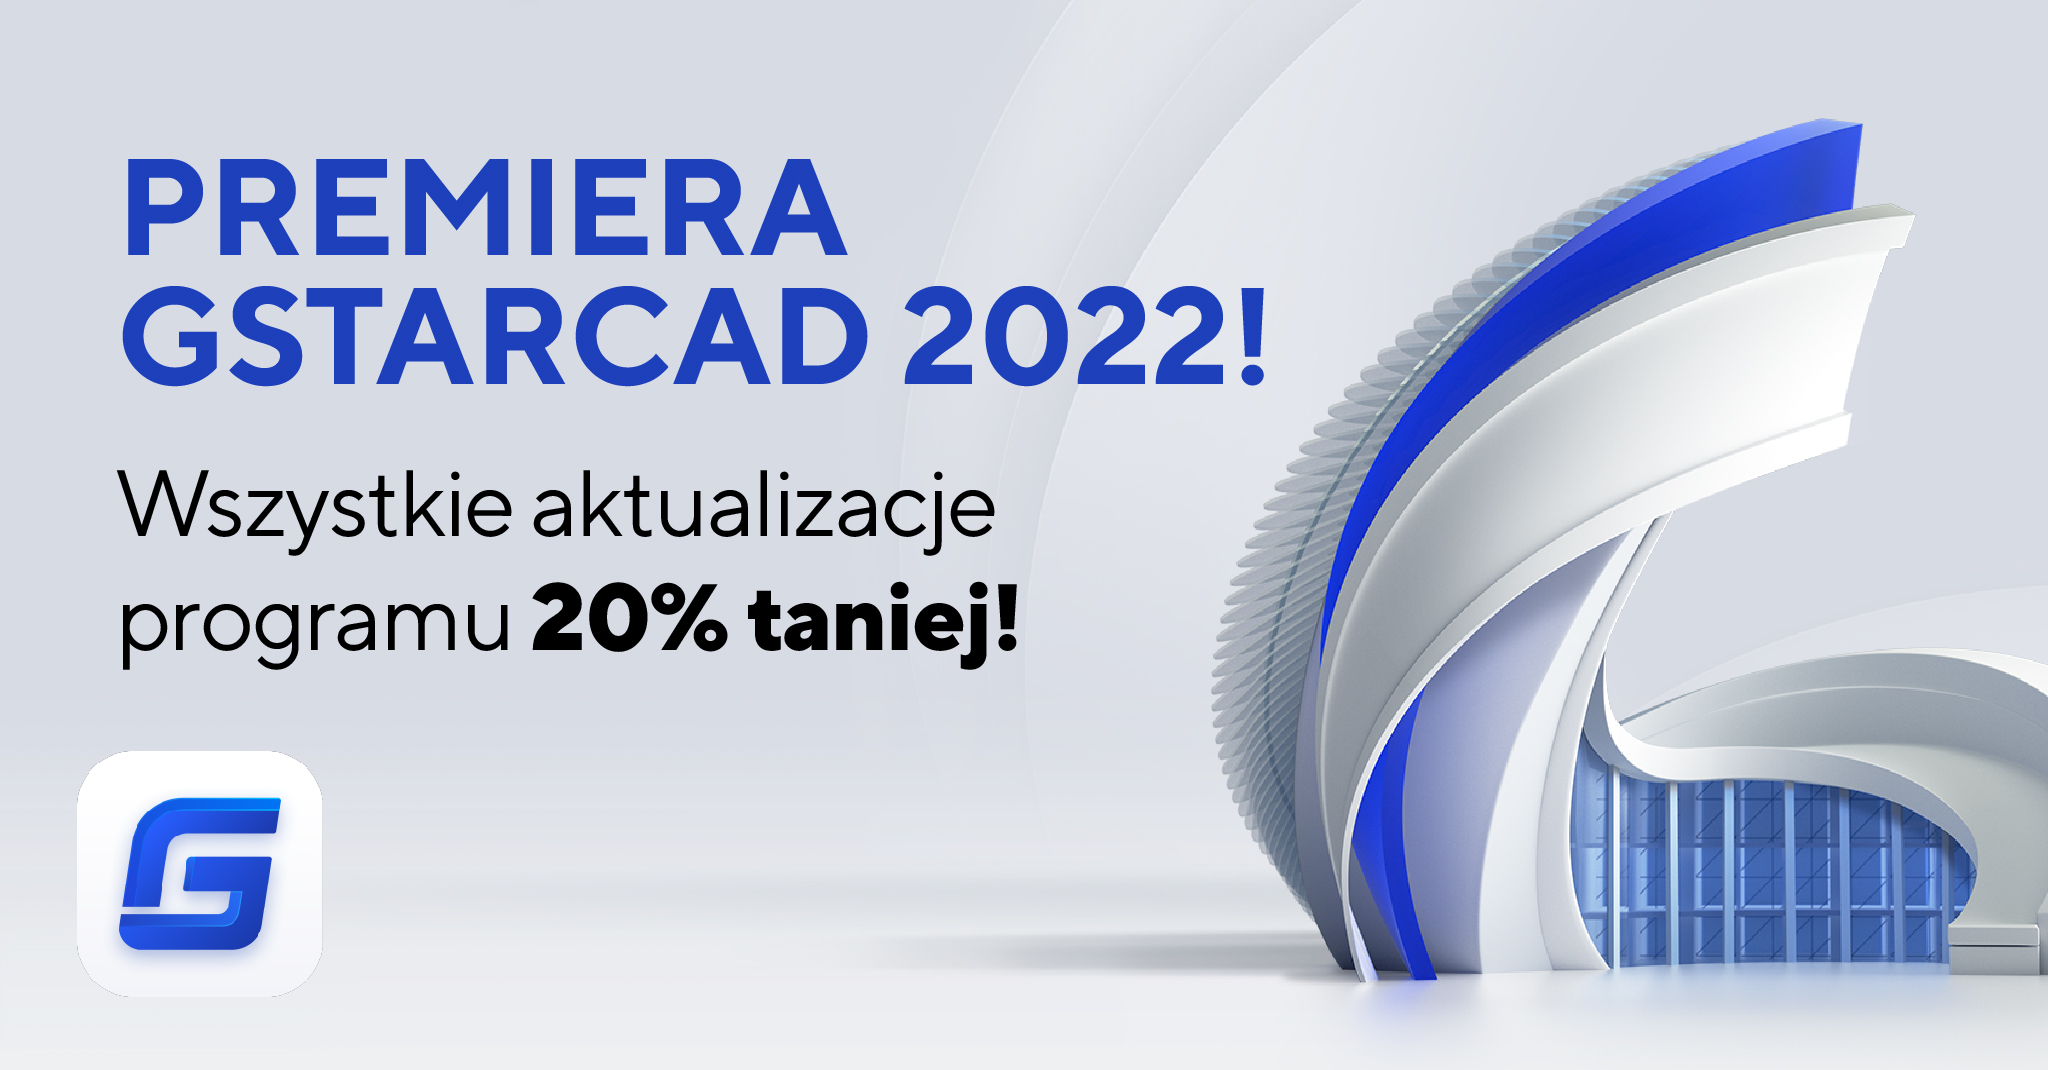 GstarCAD 2022 już JEST!!! Wszystkie aktualizacje -20%!